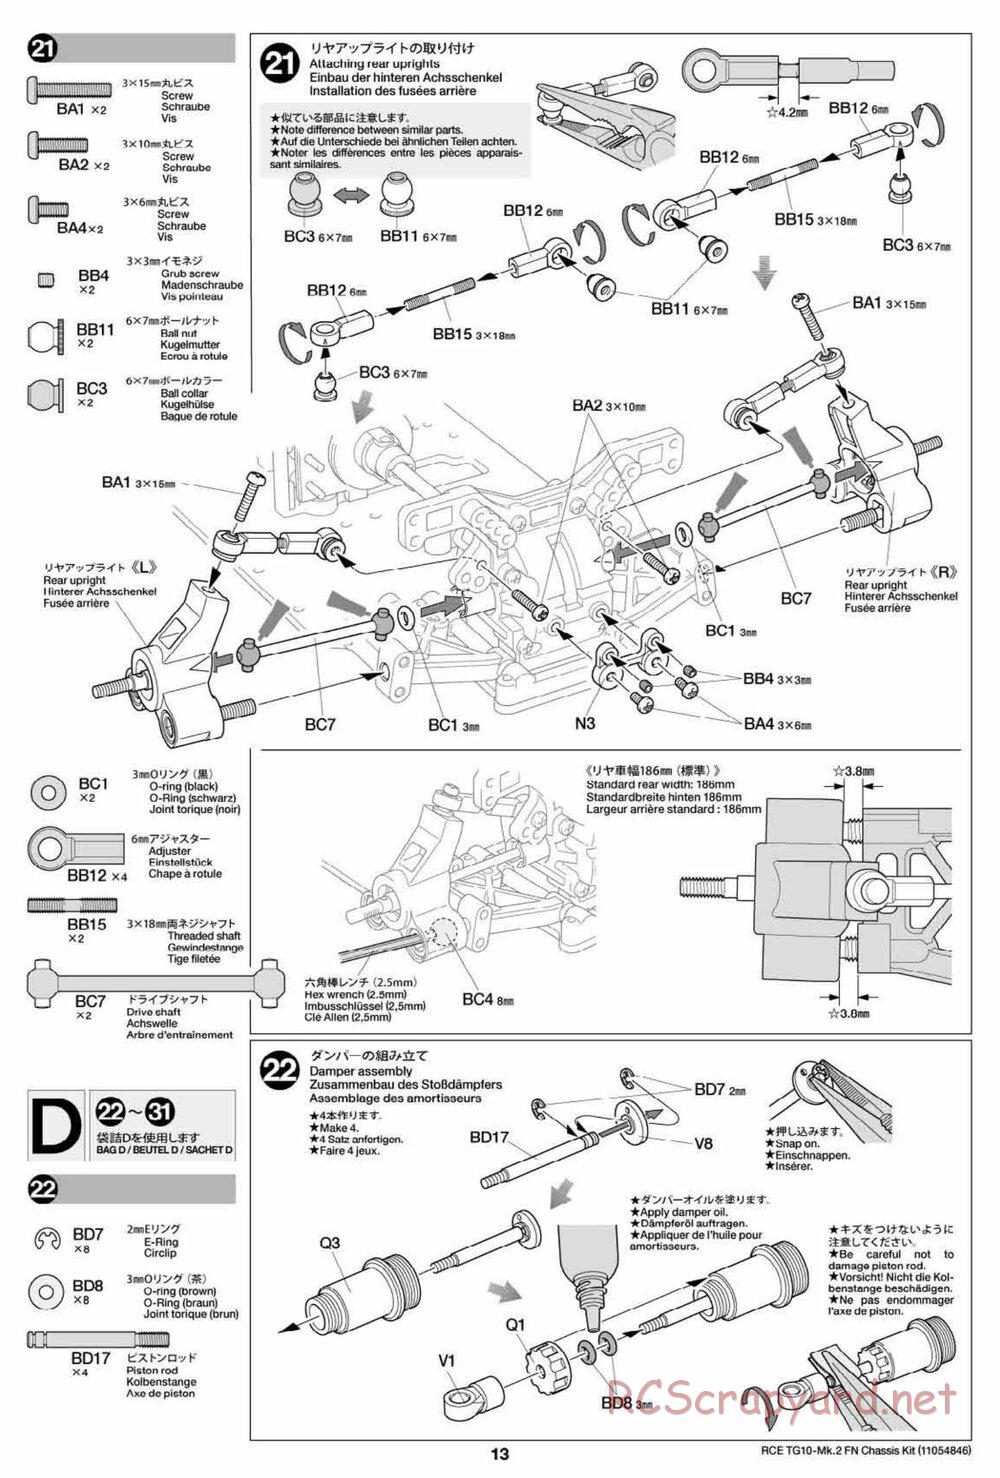 Tamiya - TG10 Mk.2 FN Chassis - Manual - Page 13